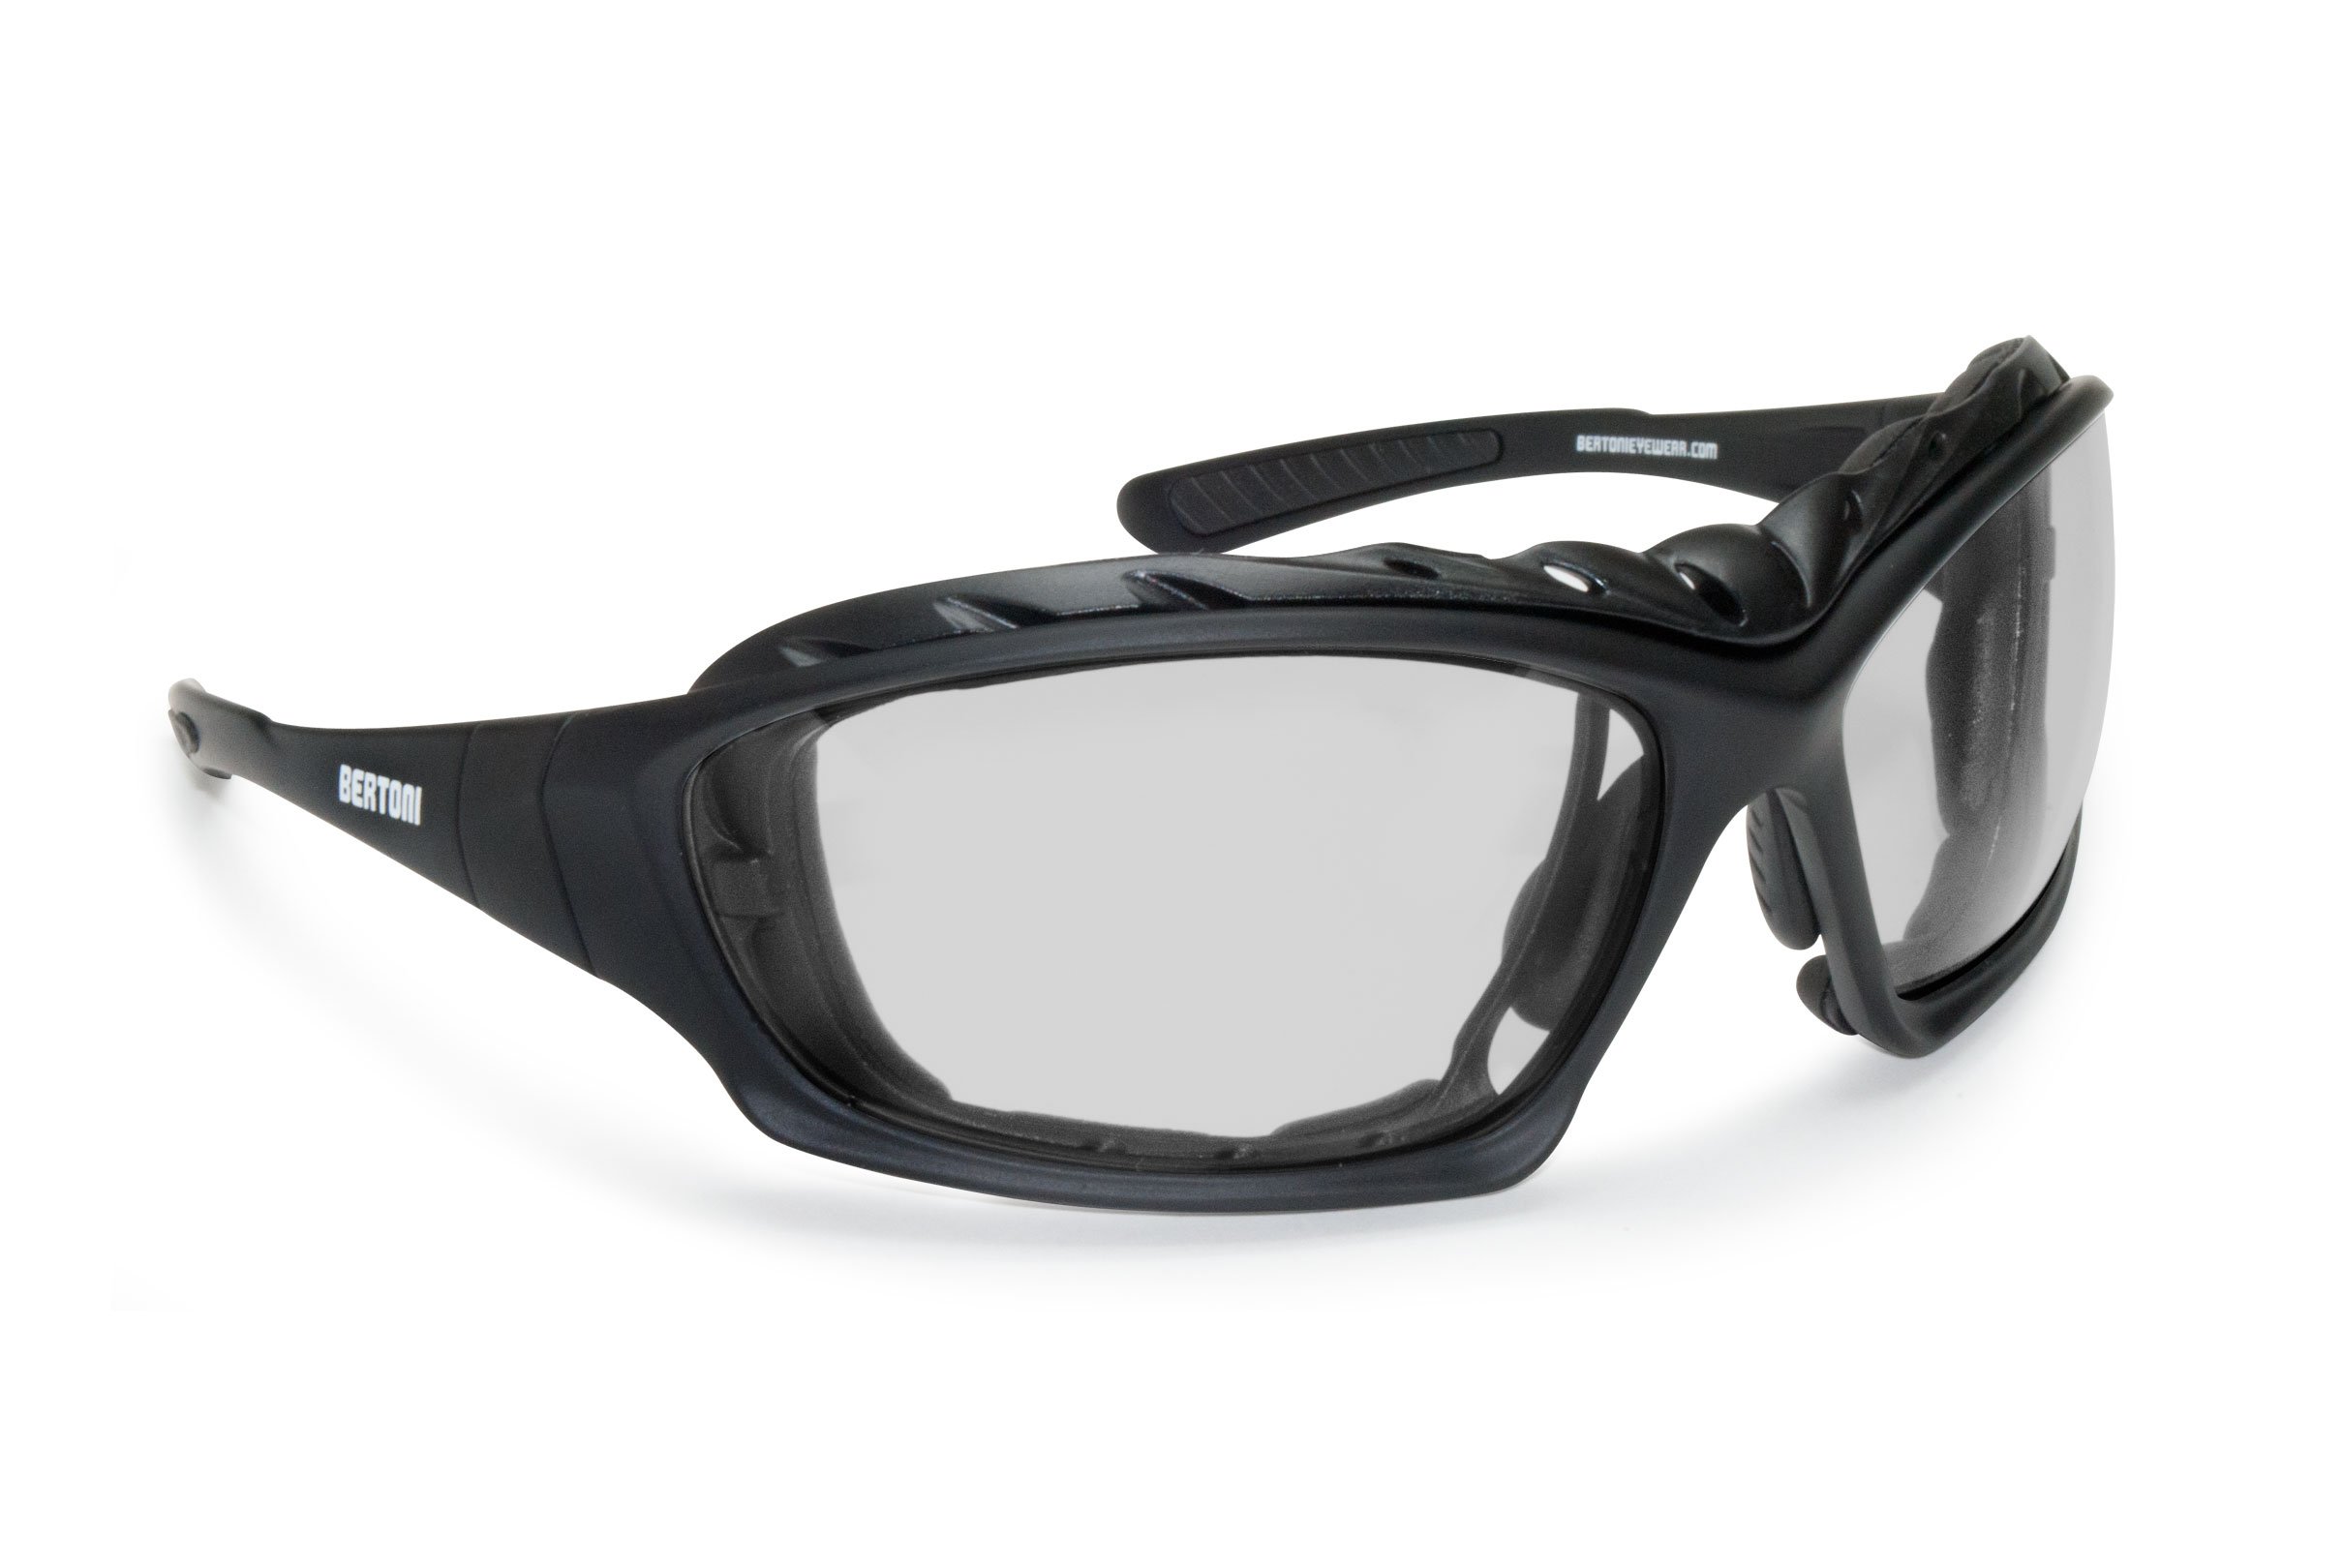 BERTONI Motorradbrille Sportbrille mit Sehstärke Antibeschlag UV Schutz - mit Austauschbare Bügel oder Kopfband - AF366 Bikerbrillen Windschutz für Brillenträger